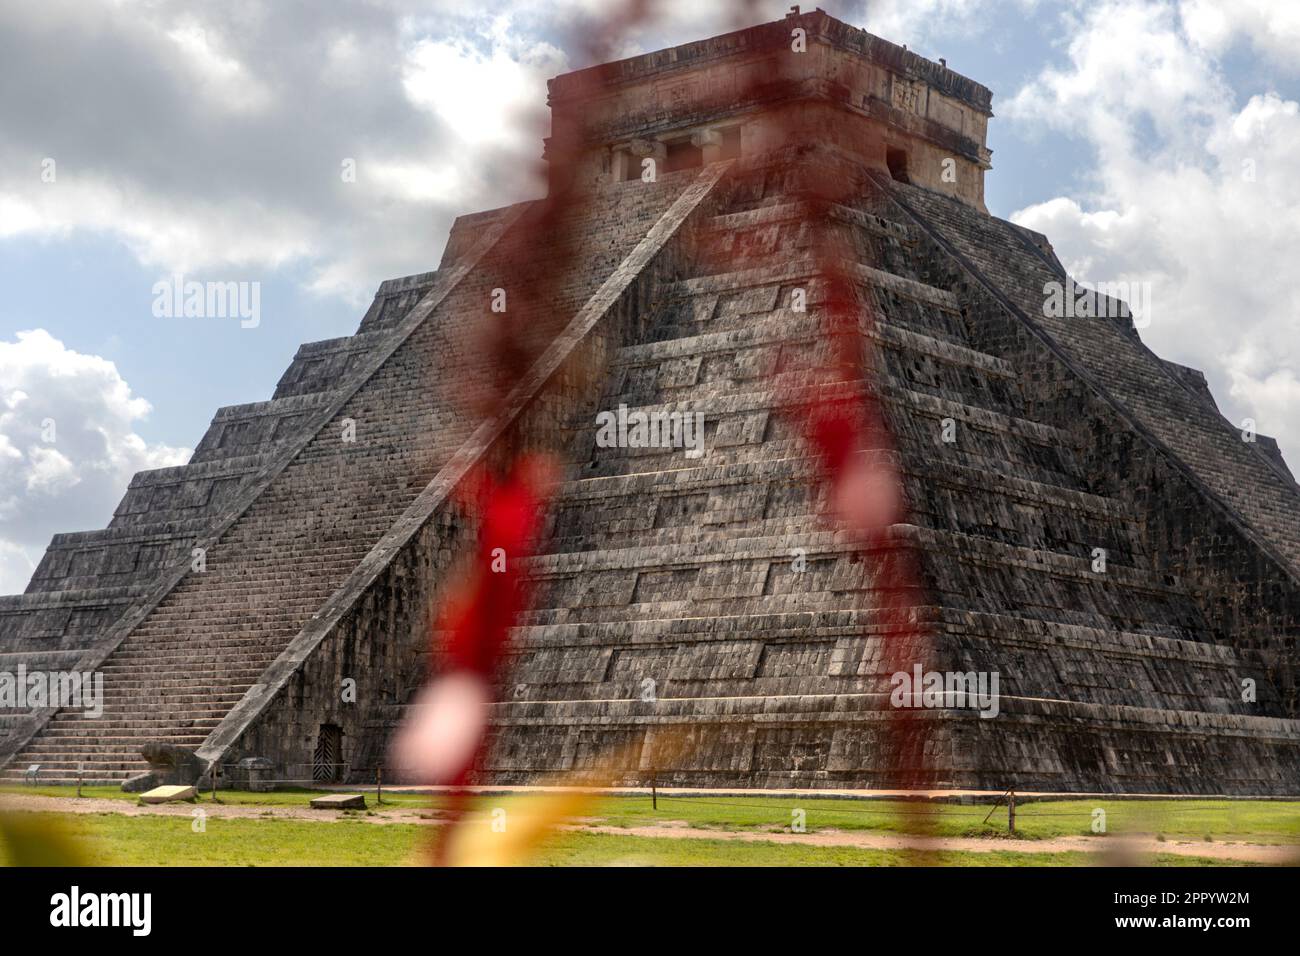 Foto des Schlosses und Tempels von Chichen Itza, der berühmten Maya-Pyramide von Mexiko, die zur Maya-Kultur und -Zivilisation gehört. Reise-Concep Stockfoto